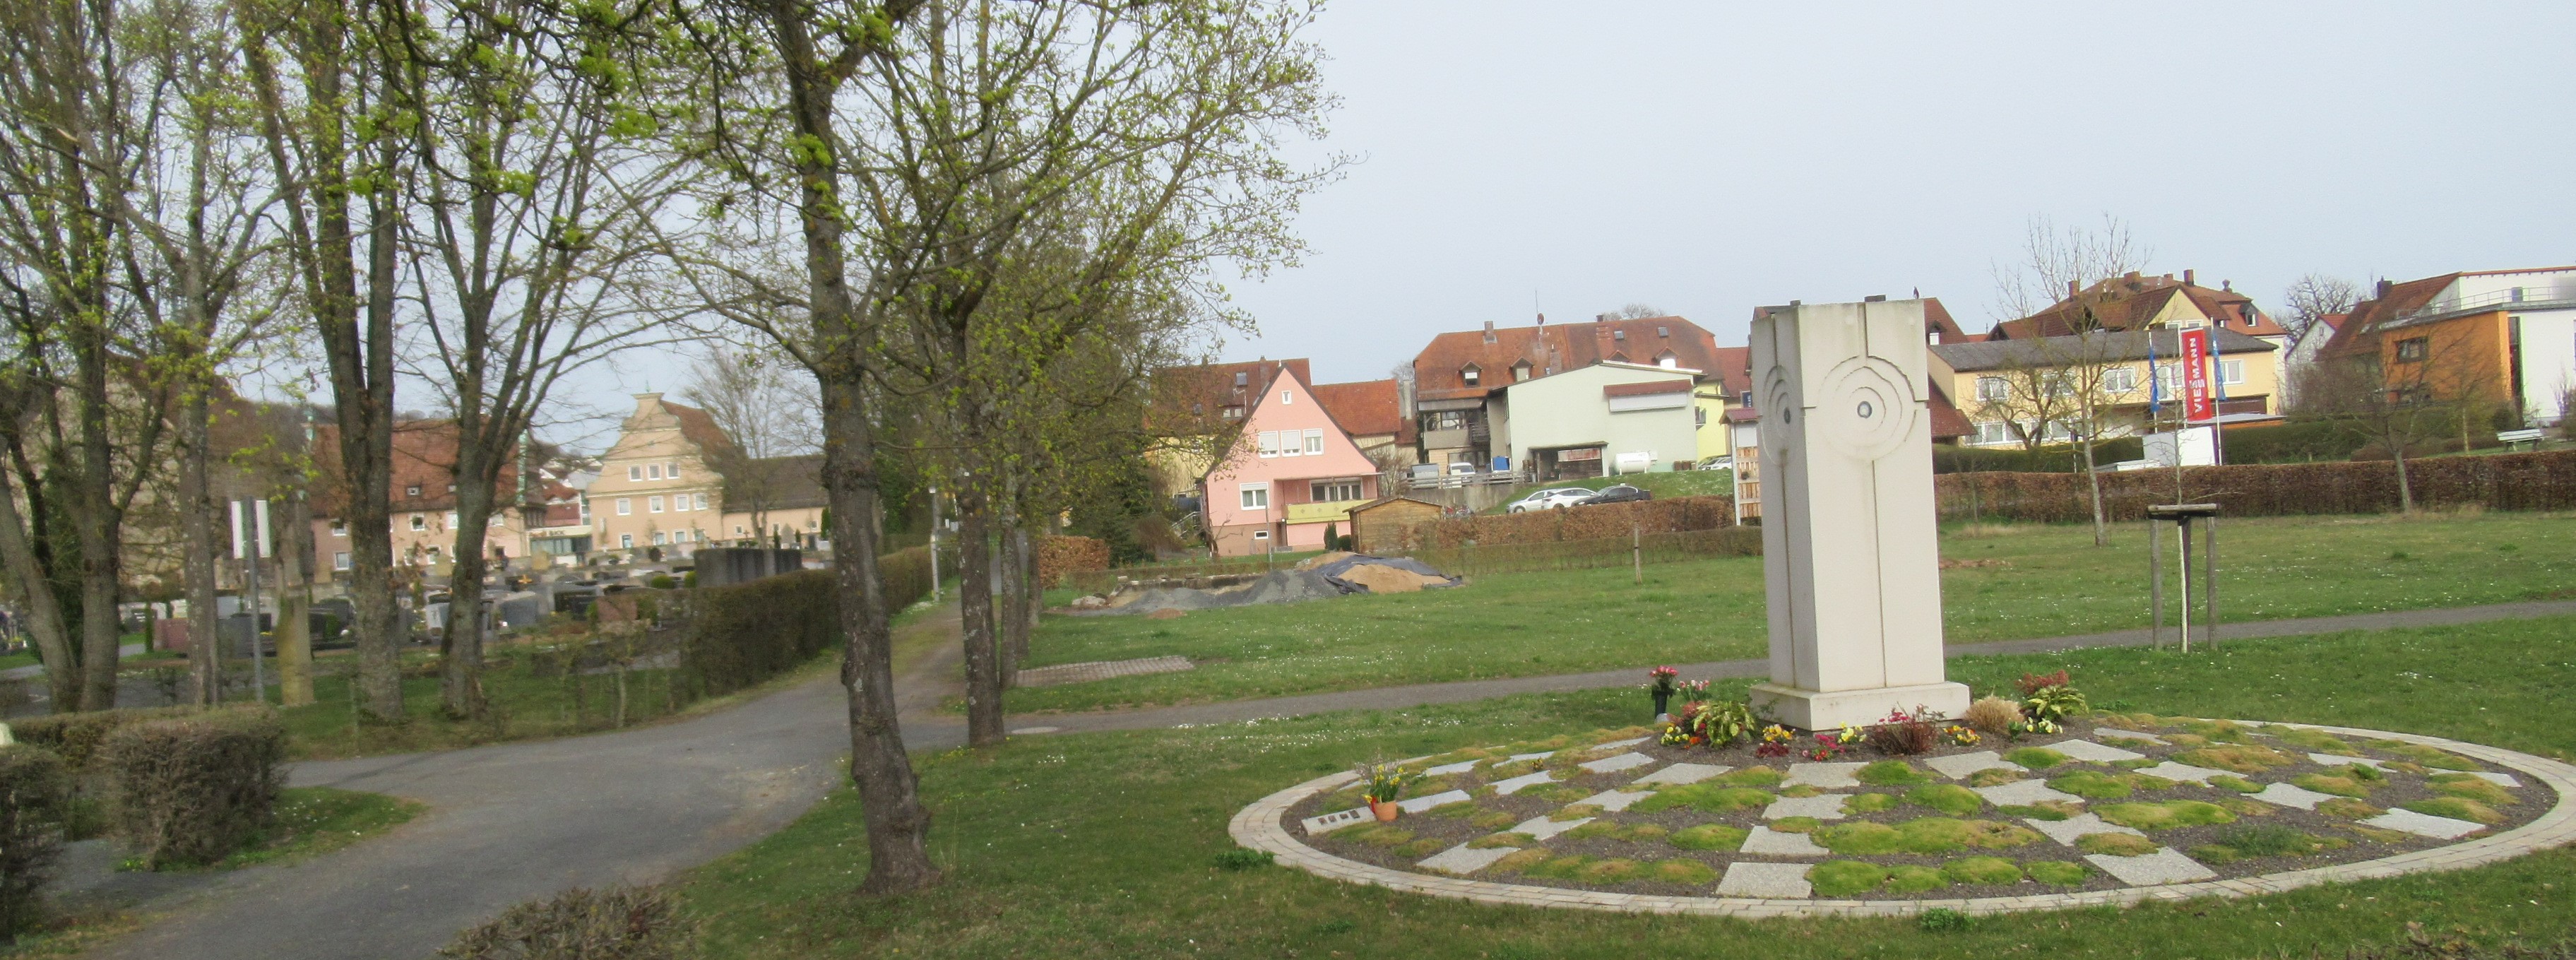 Friedhof Ebern Urnengrabstelle mit künftigem LBD-Parkplatz